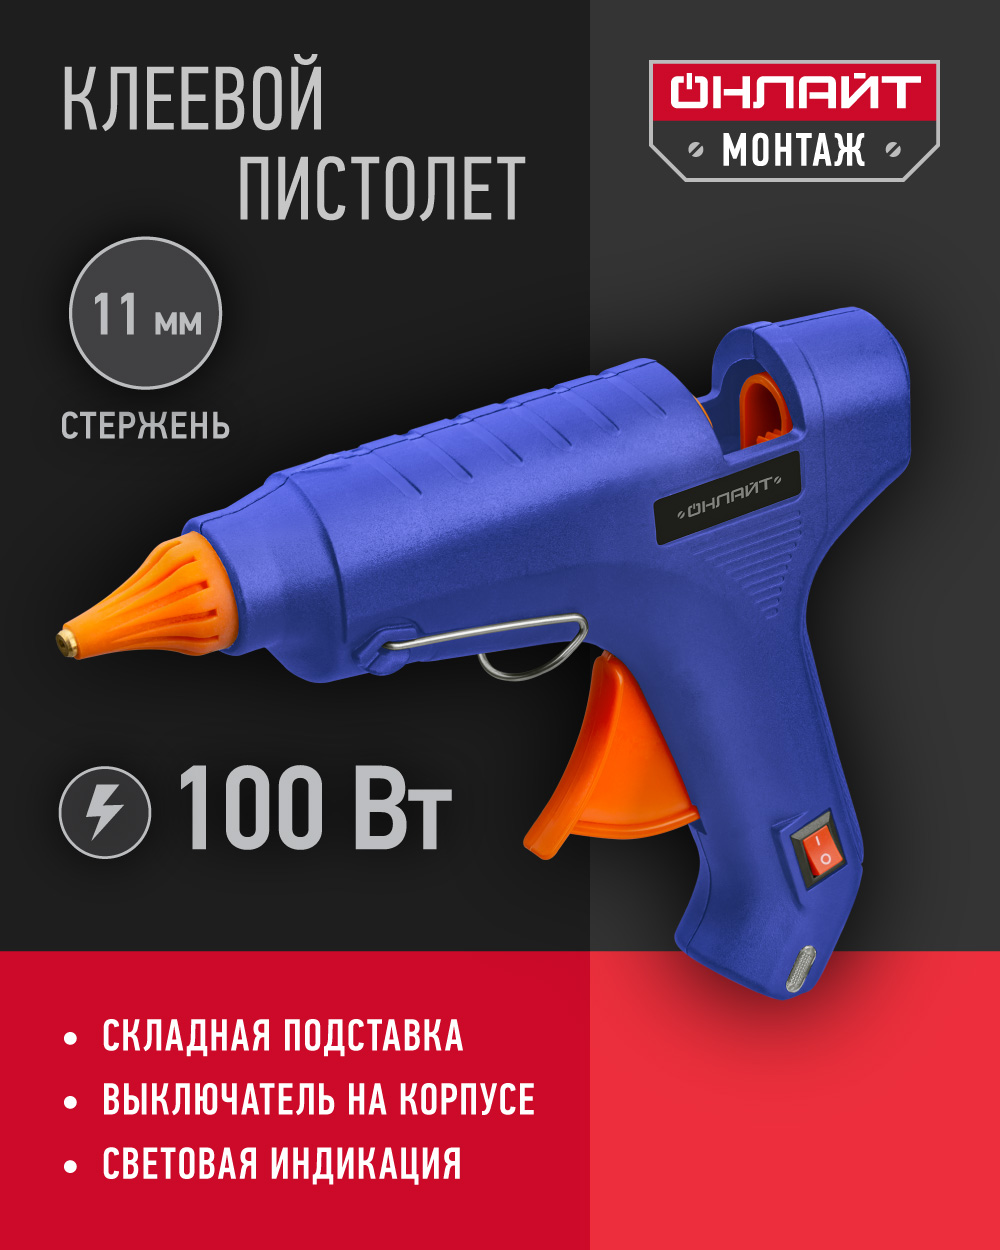 Клеевой пистолет профессиональный ОНЛАЙТ 90 088, 100 Вт, 11 мм, синий пистолет энкор pt40 50346 клеевой 11 мм